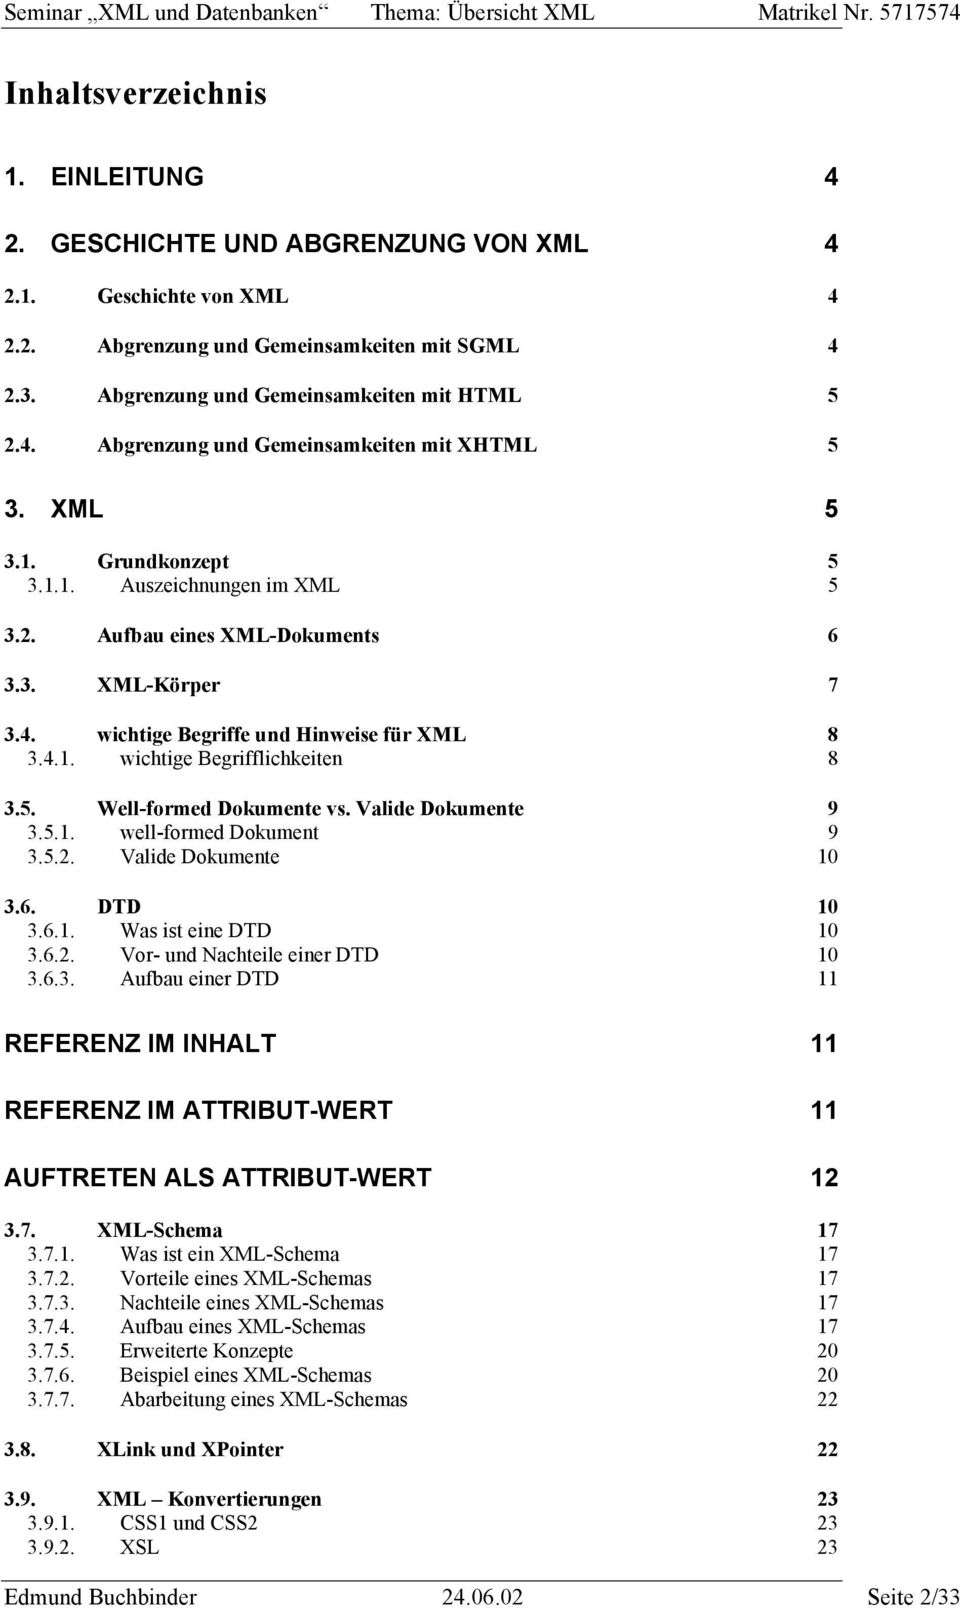 4. wichtige Begriffe und Hinweise für XML 8 3.4.1. wichtige Begrifflichkeiten 8 3.5. Well-formed Dokumente vs. Valide Dokumente 9 3.5.1. well-formed Dokument 9 3.5.2. Valide Dokumente 10 3.6.